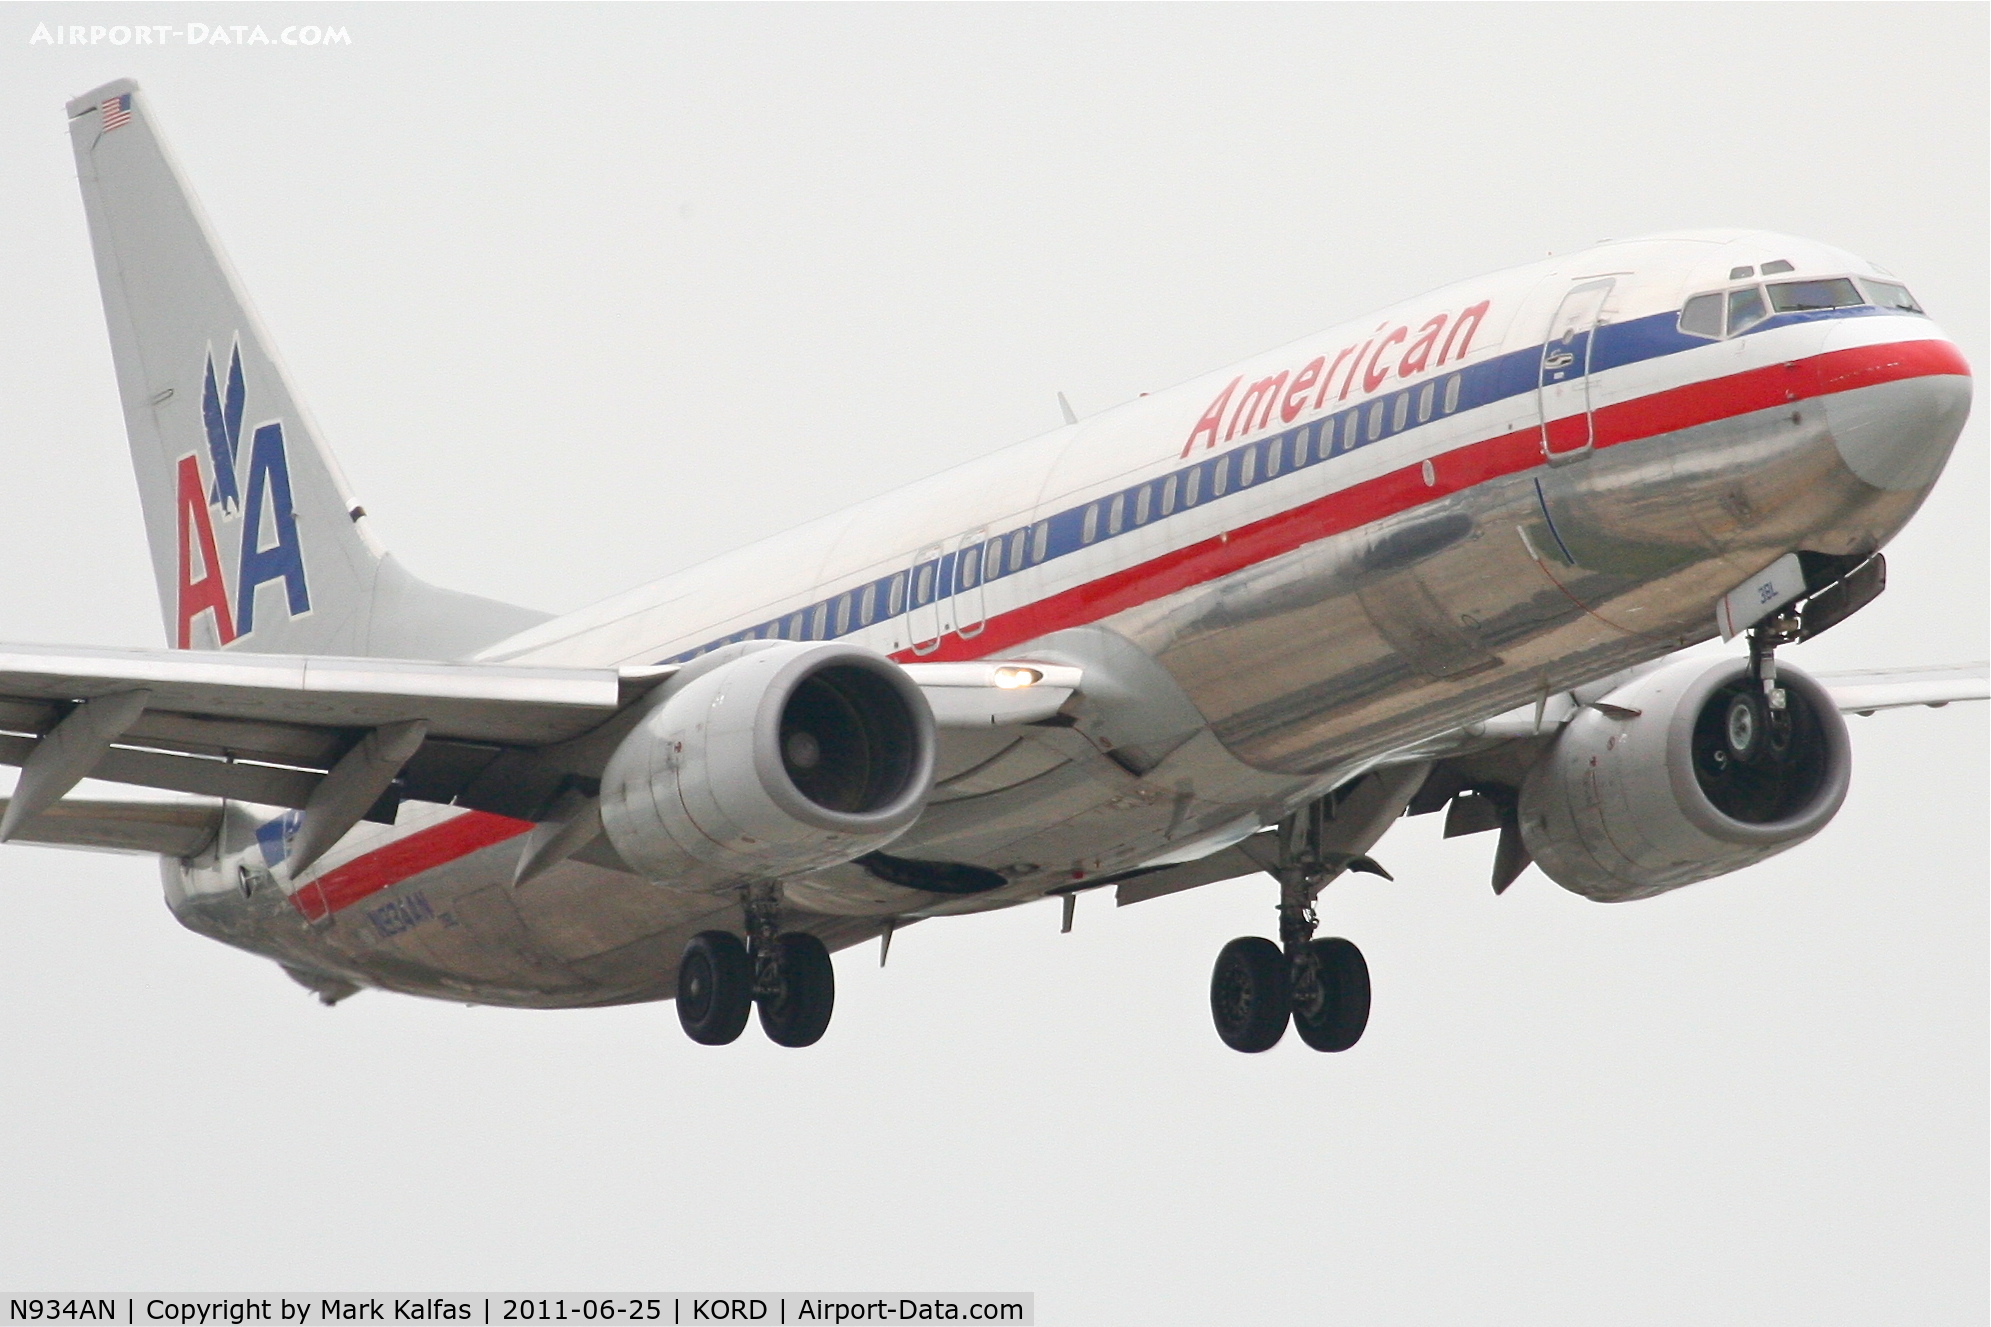 N934AN, 2000 Boeing 737-823 C/N 29531, American Airlines Boeing 737-823, AAL1760 arriving from Las Vegas, RWY 14R approach KORD.